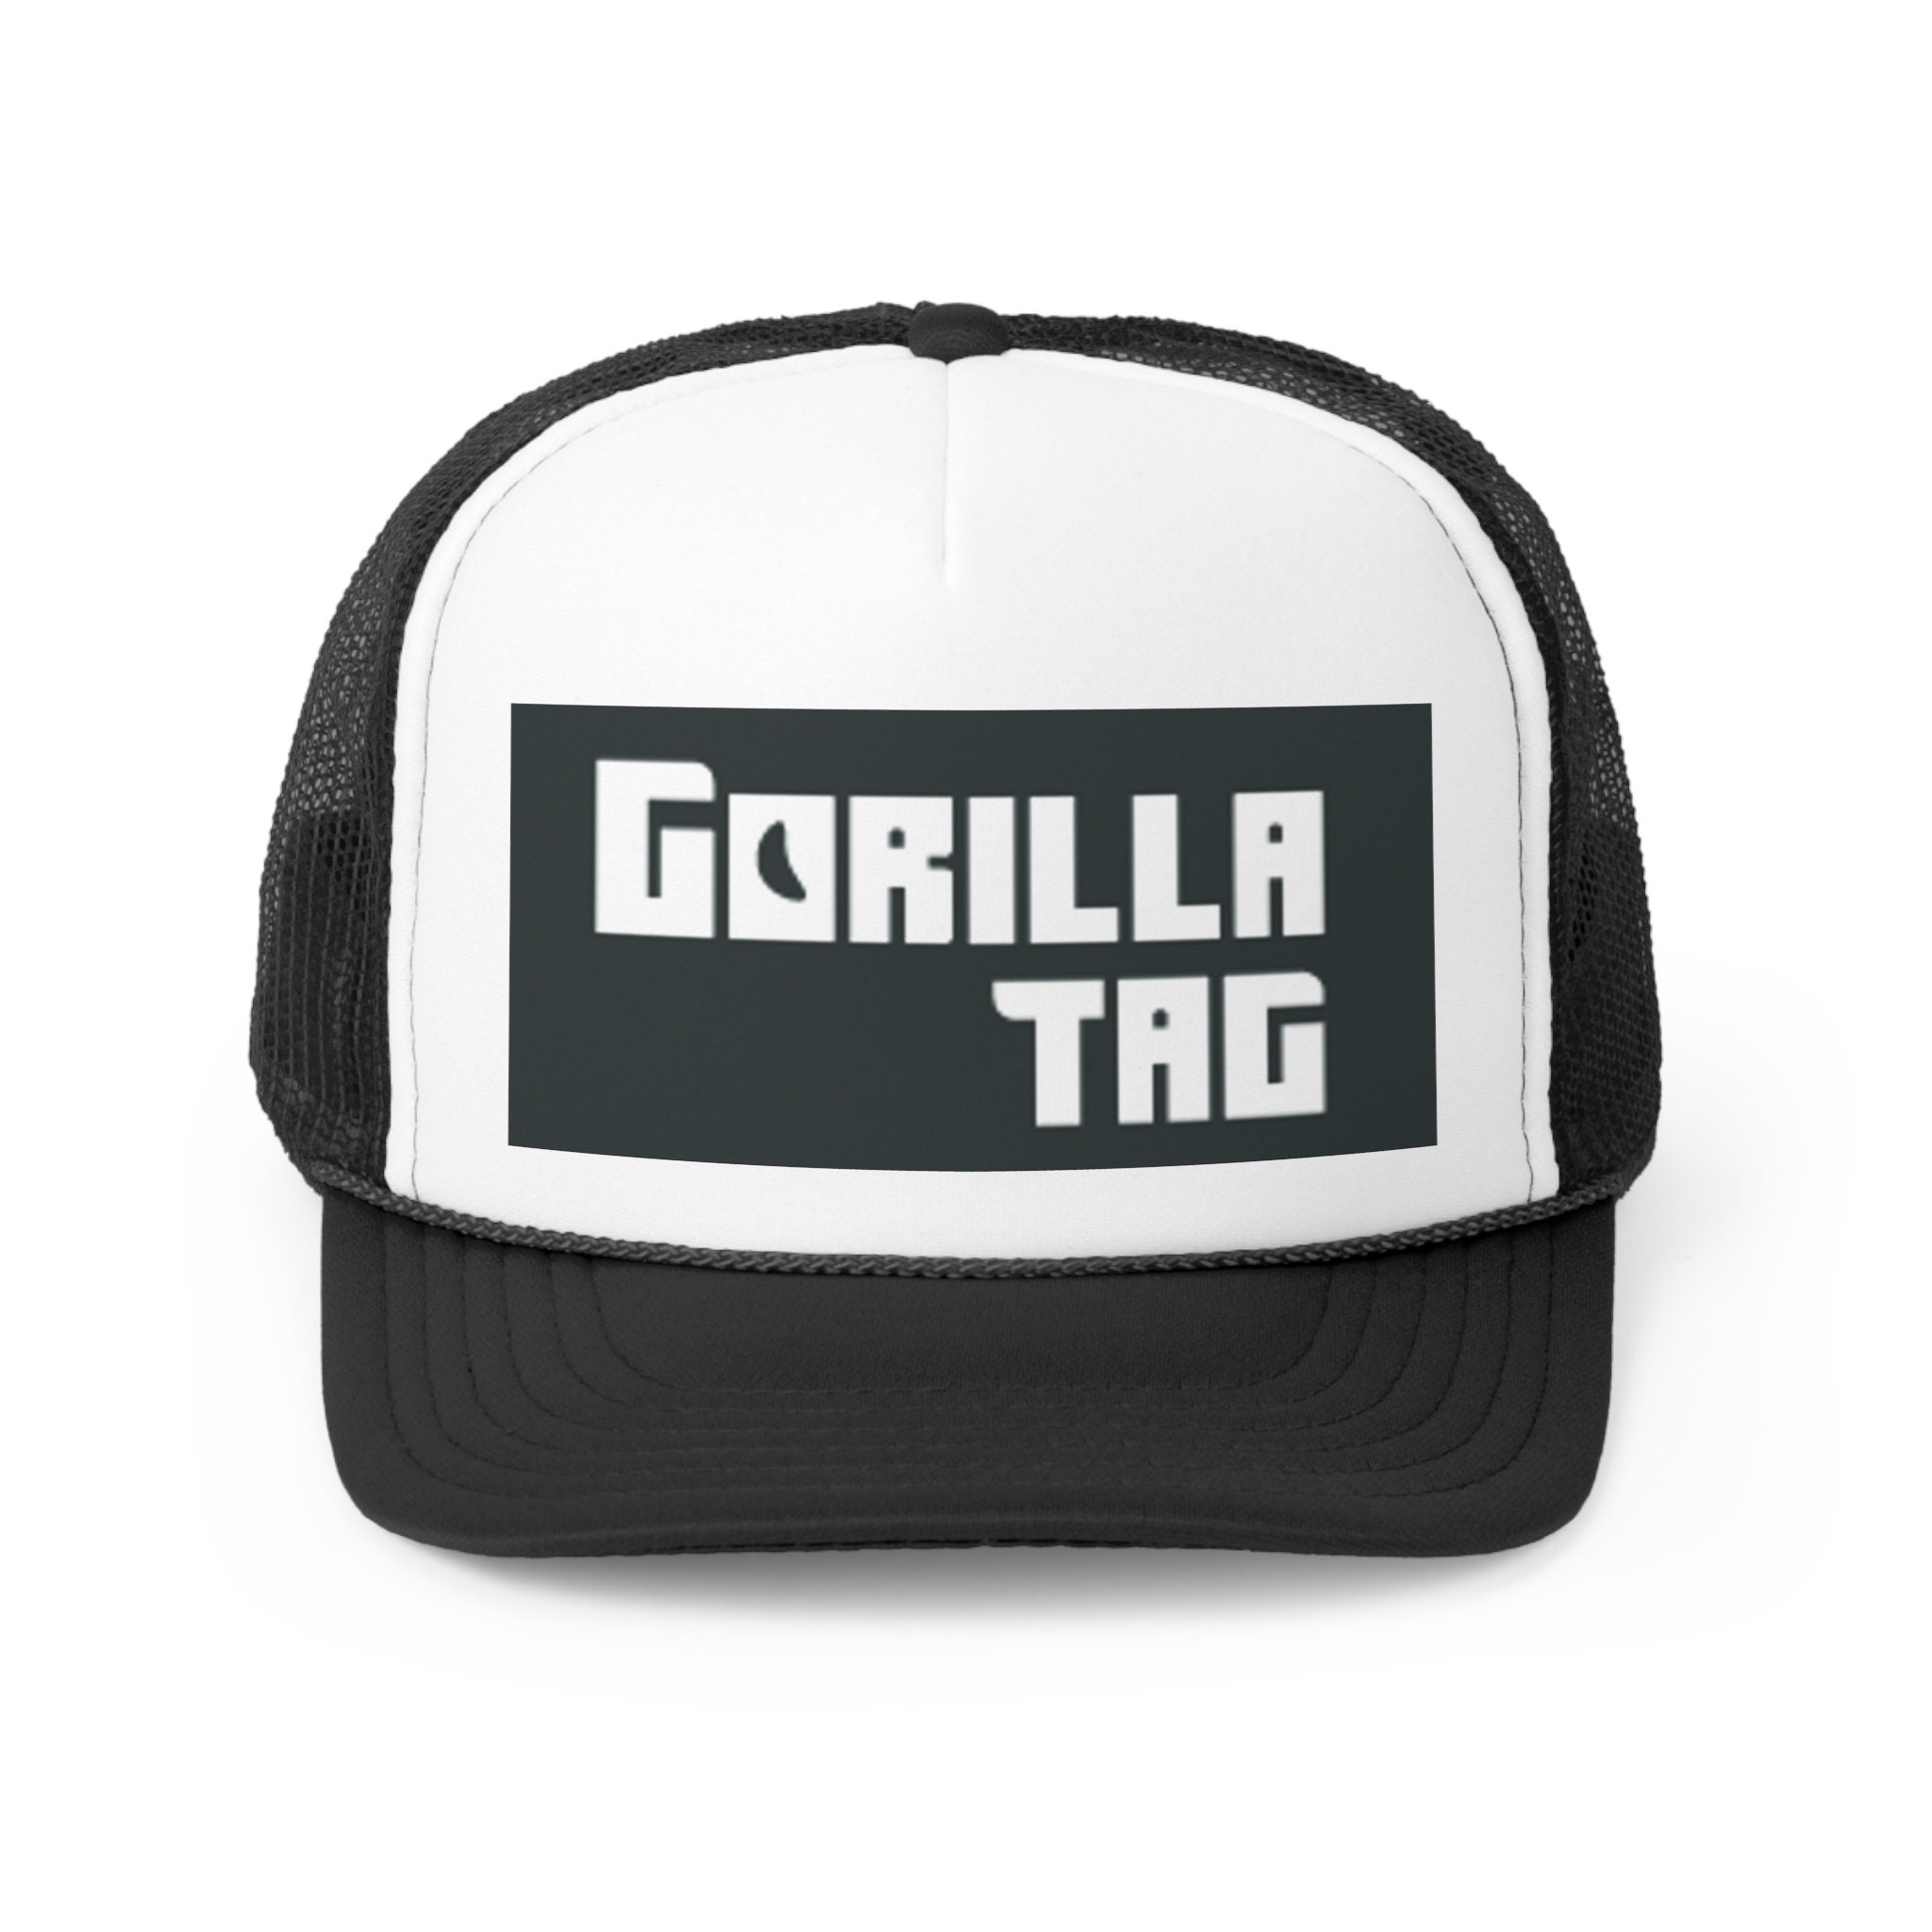 mobile gorilla tag game name｜TikTok Search